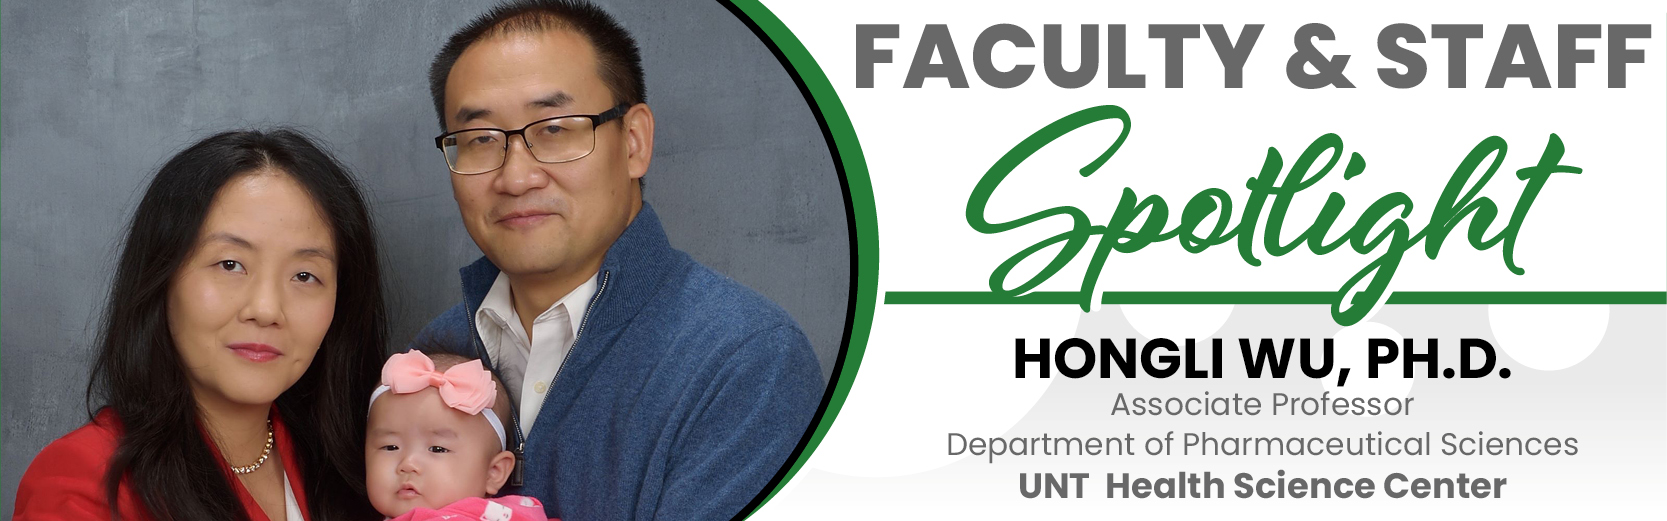 Faculty & Staff Spotlight: Hongli Wu, Ph.D., UNT Health Science Center